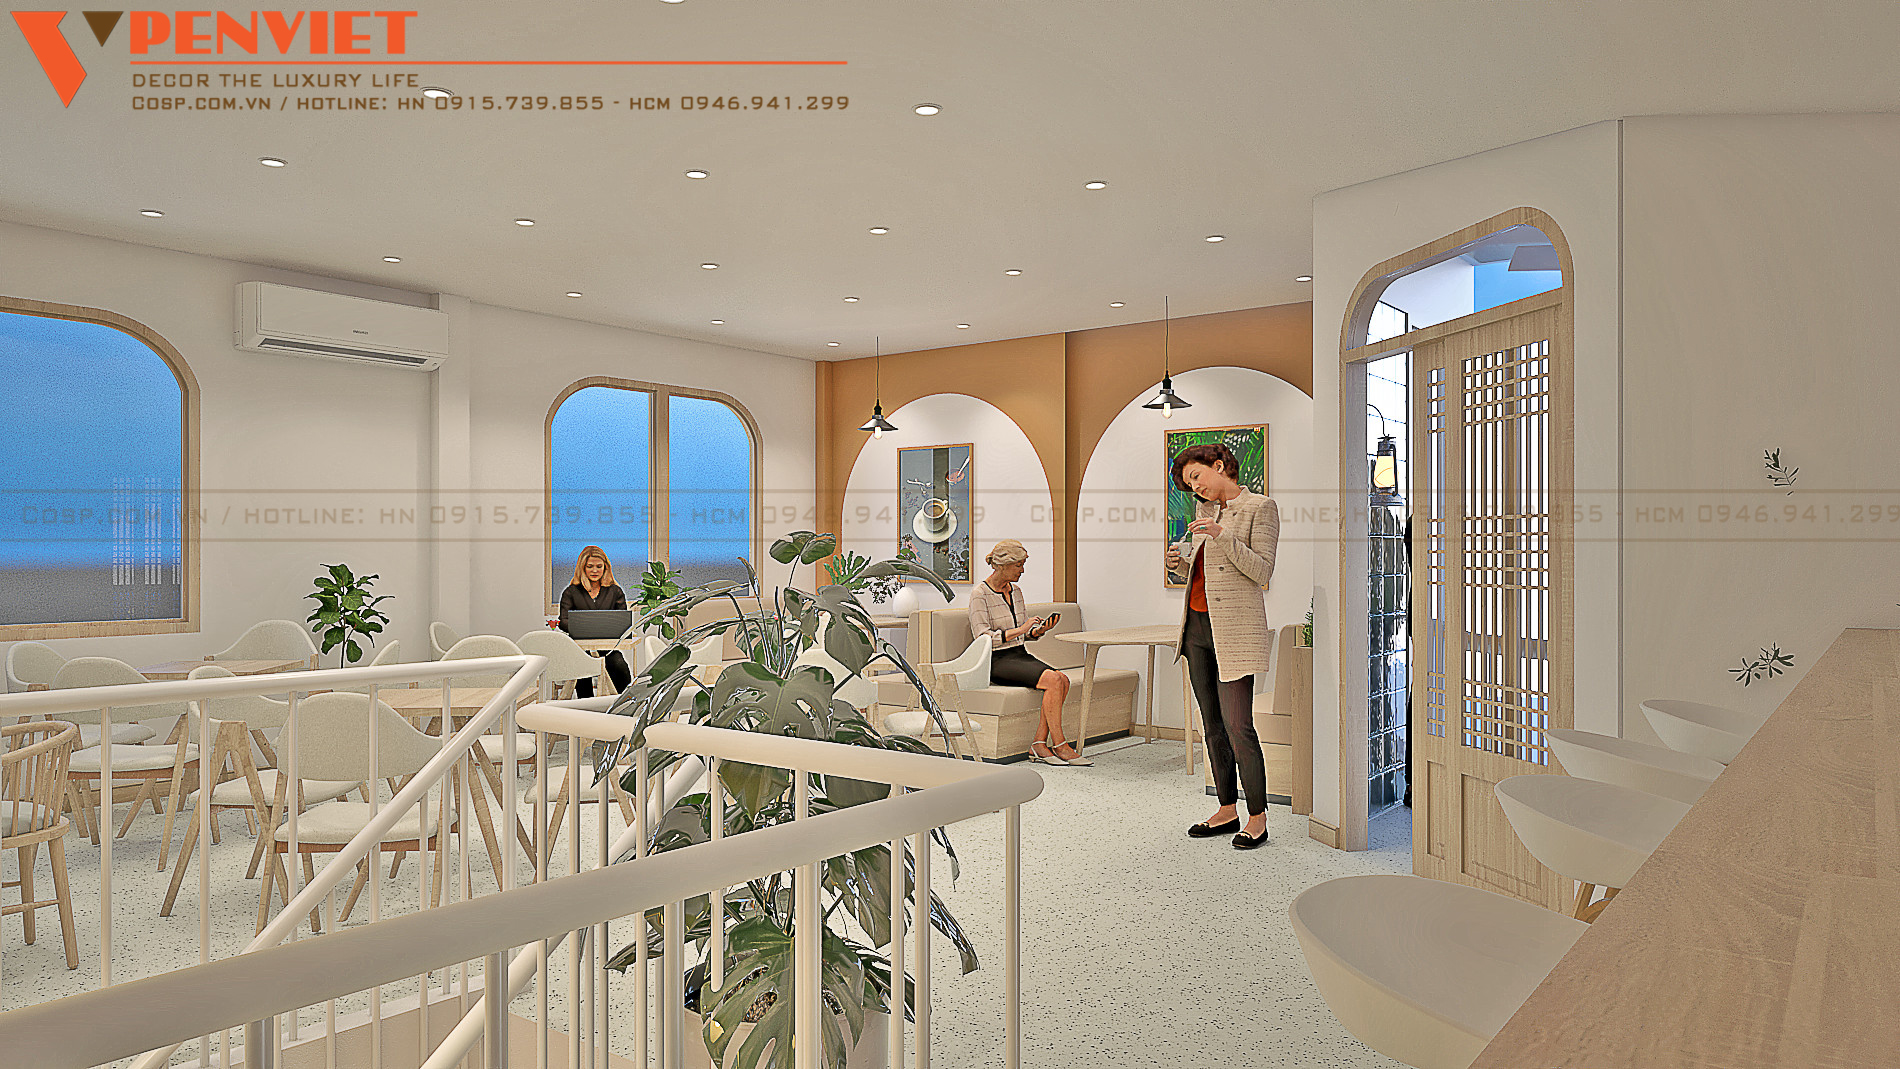 PenViet tạo được sự liên kết không gian trong mẫu thiết kế quán cafe